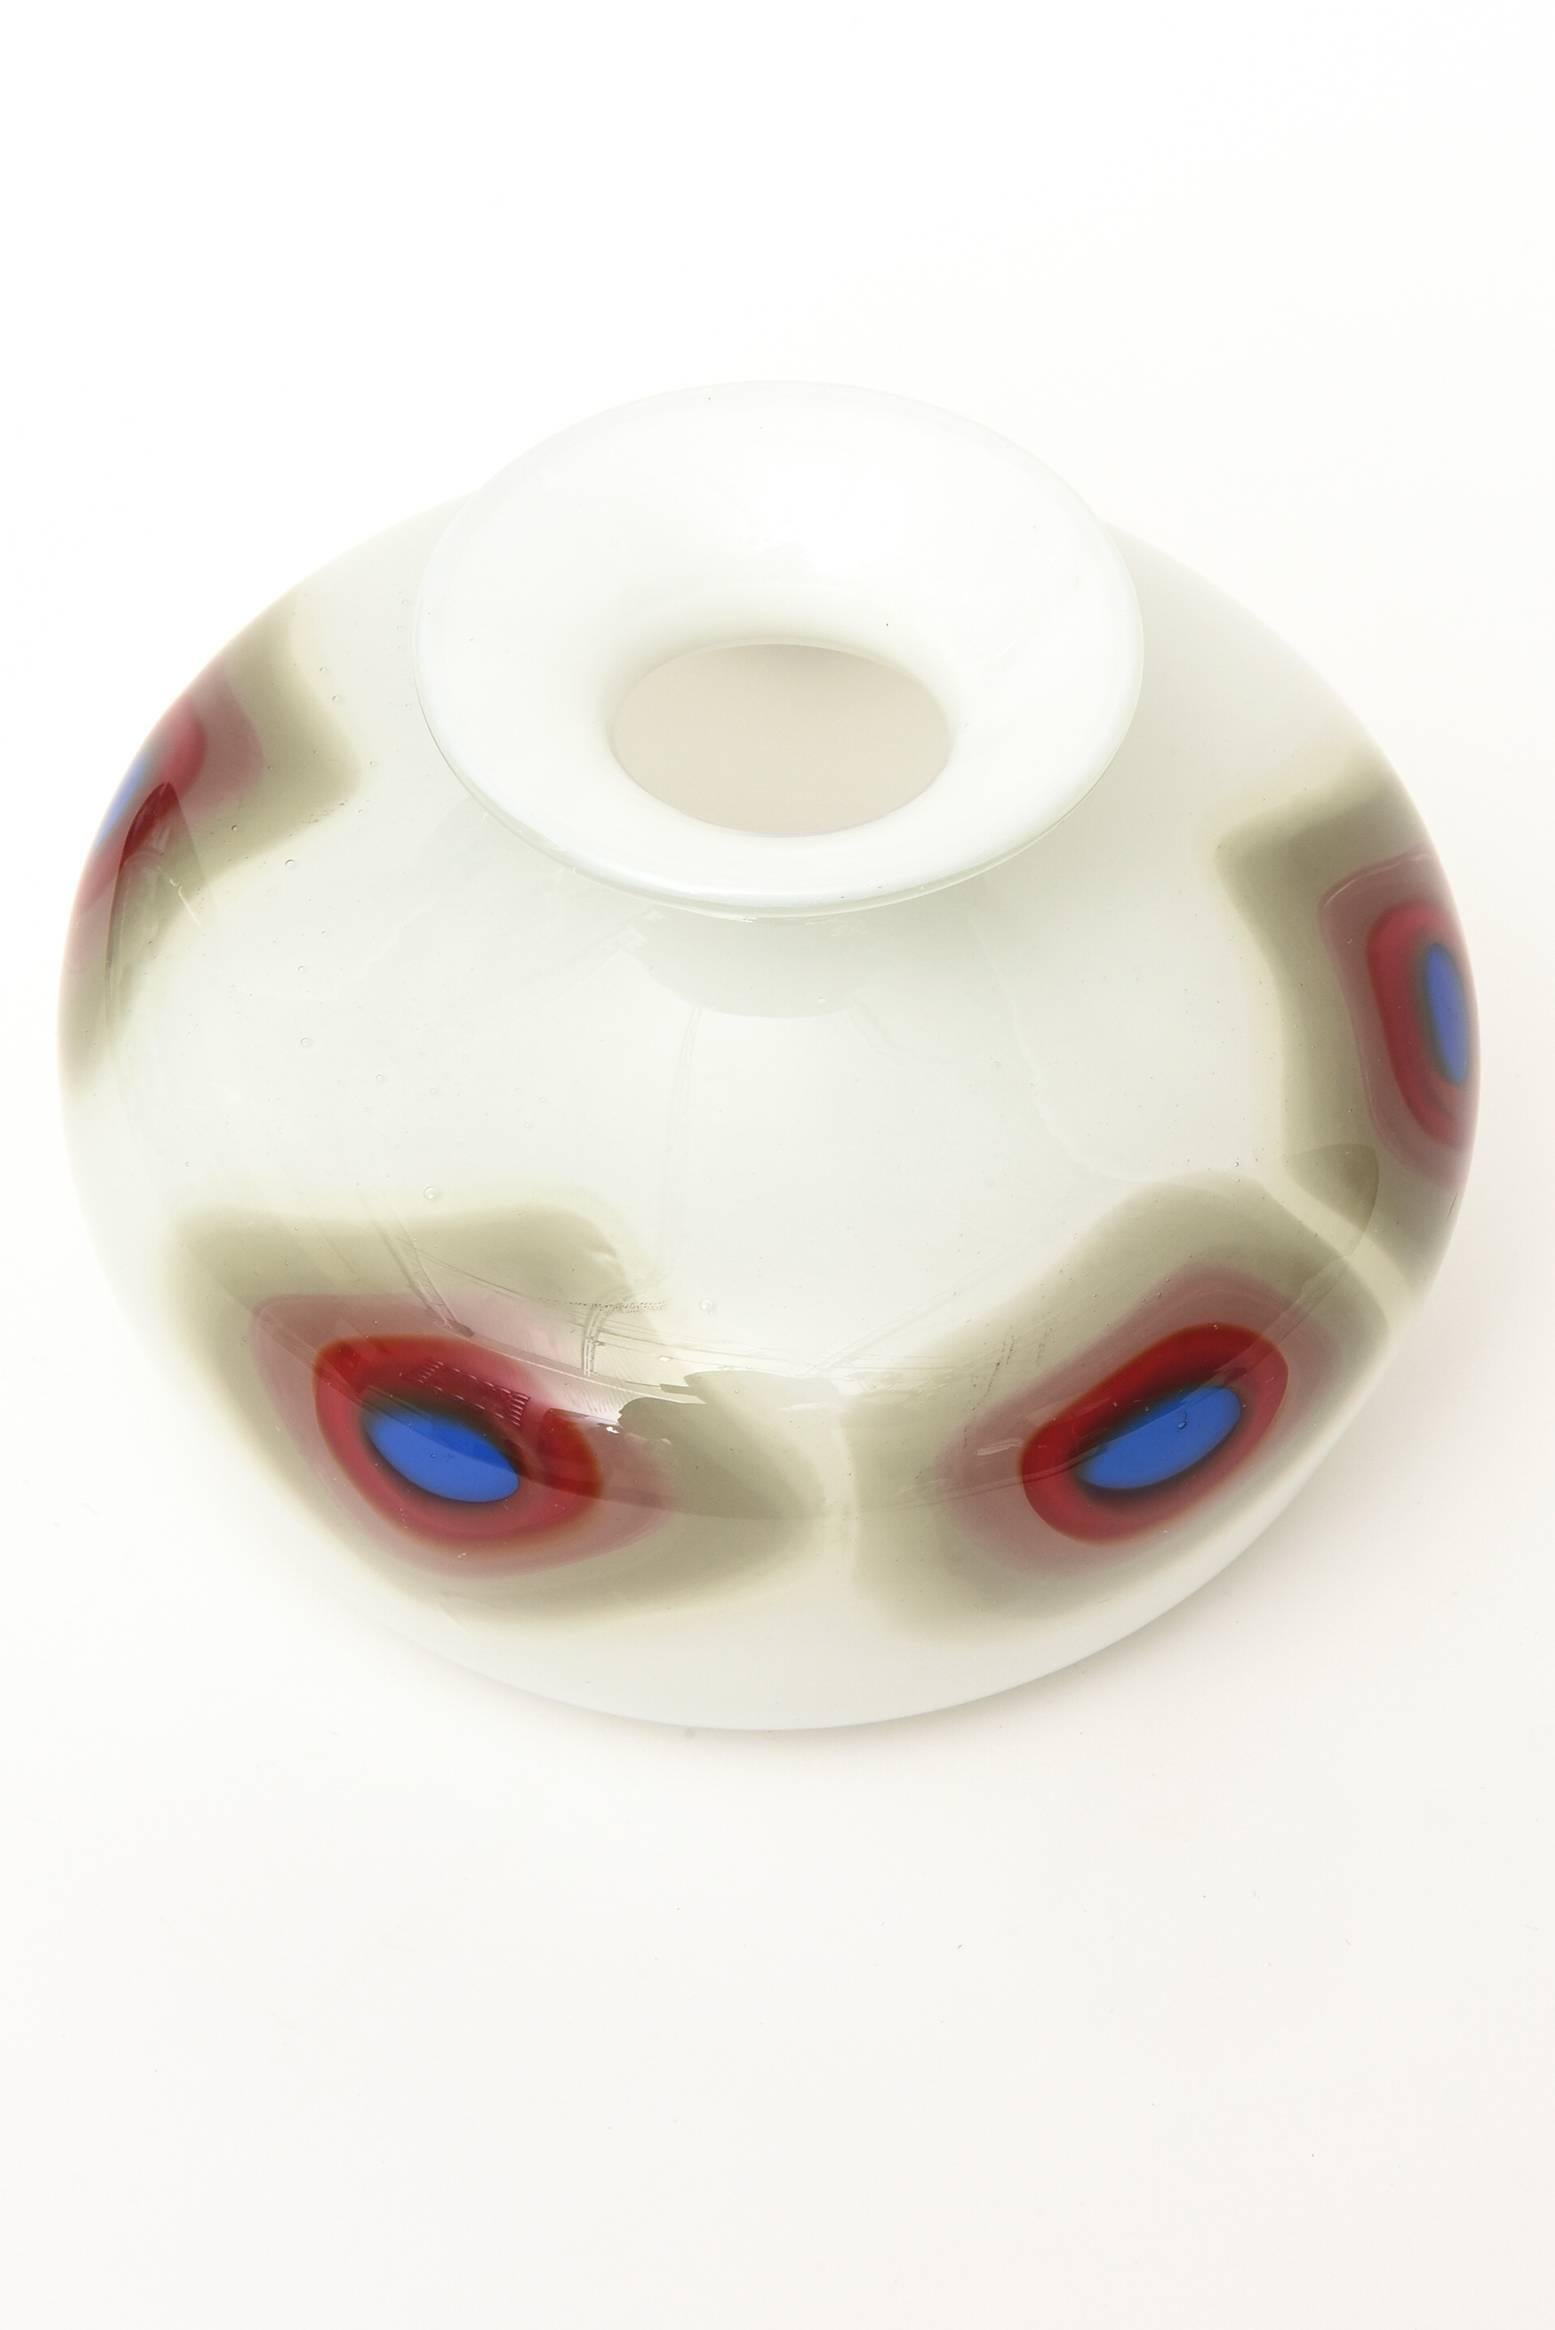 Le motif graphique en forme de losange de ce vase ou objet en verre italien de Murano constitue à lui seul une grande pièce de verre. Le verre blanc de la boîte est compensé par un motif périmétral représentant un œil de bœuf en forme de diamant